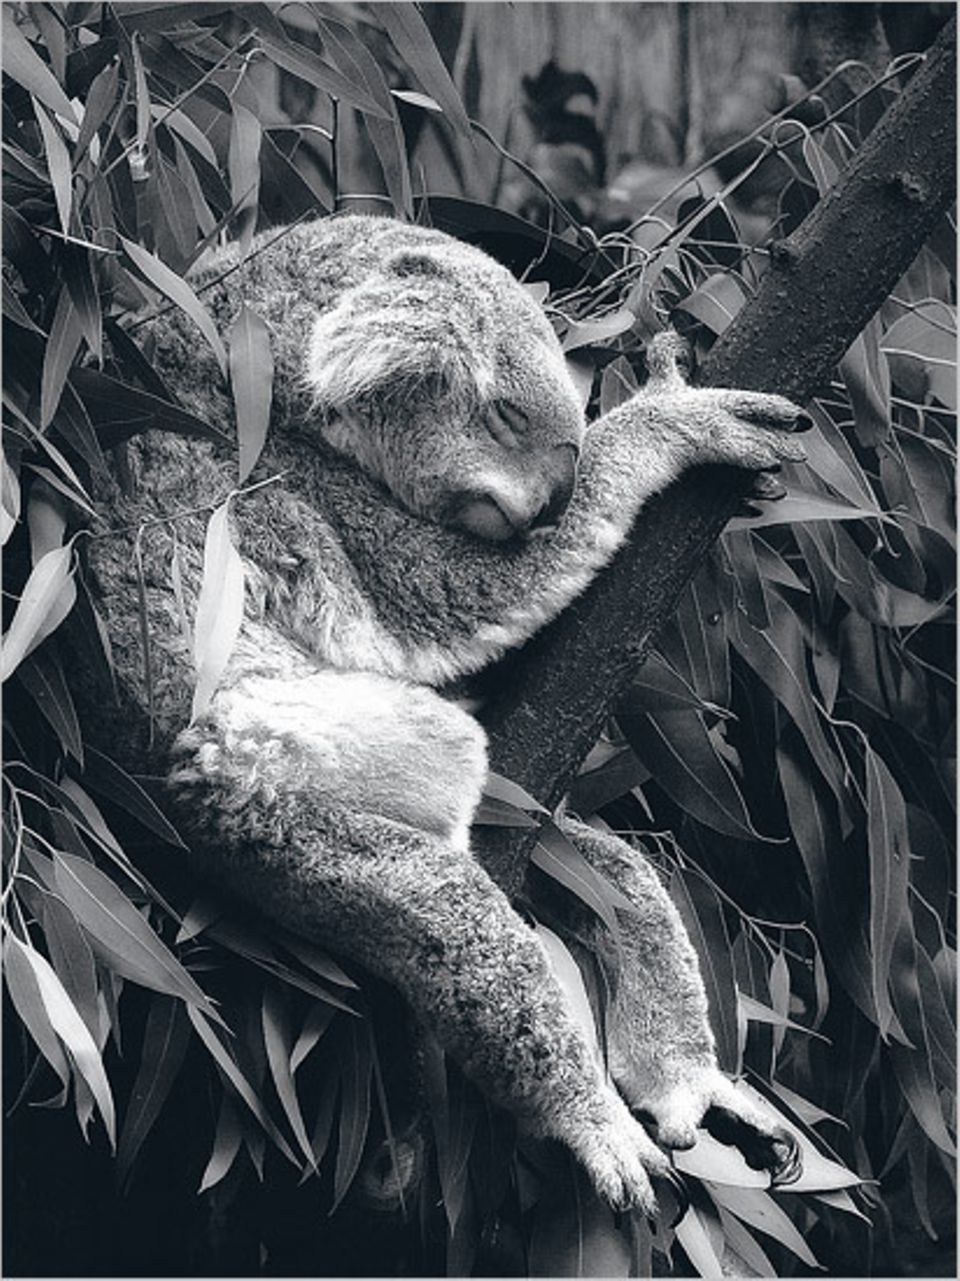 Diese Aufnahme gelang Oliver Bandel aus Werne an der Lippe im Koala-Haus des Duisburger Zoos. Sie ist in diesem Monat von der GEO-Bildredaktion zum Siegermotiv des Online-Fotowettbewerbs auf GEO.de gewählt worden – unter 1500 Bildern